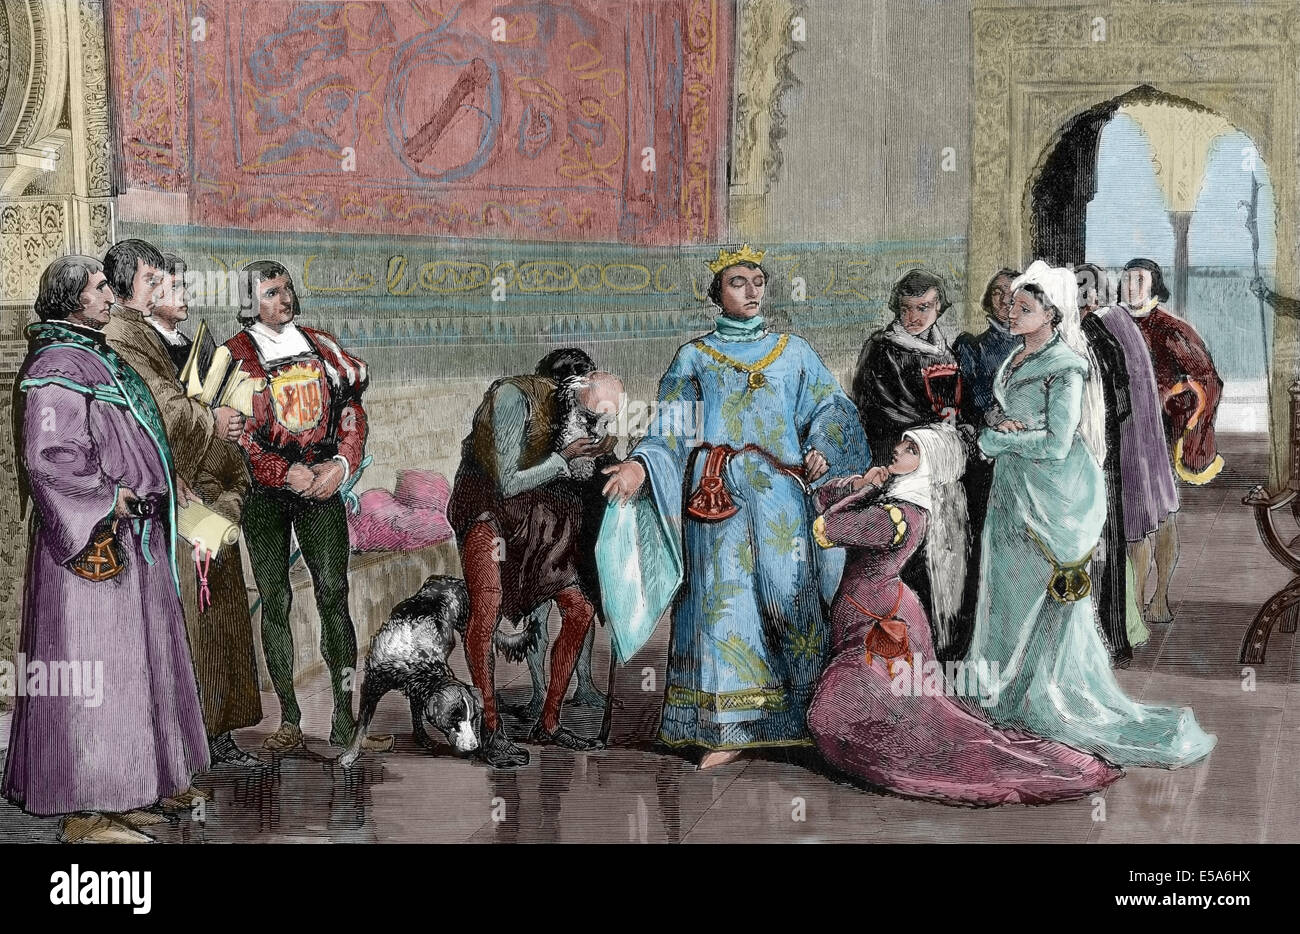 Eleonora di Castiglia (1307-1359), regina consorte di Aragona, cercando giustizia re Pietro I di Castiglia. Incisione colorata. Foto Stock